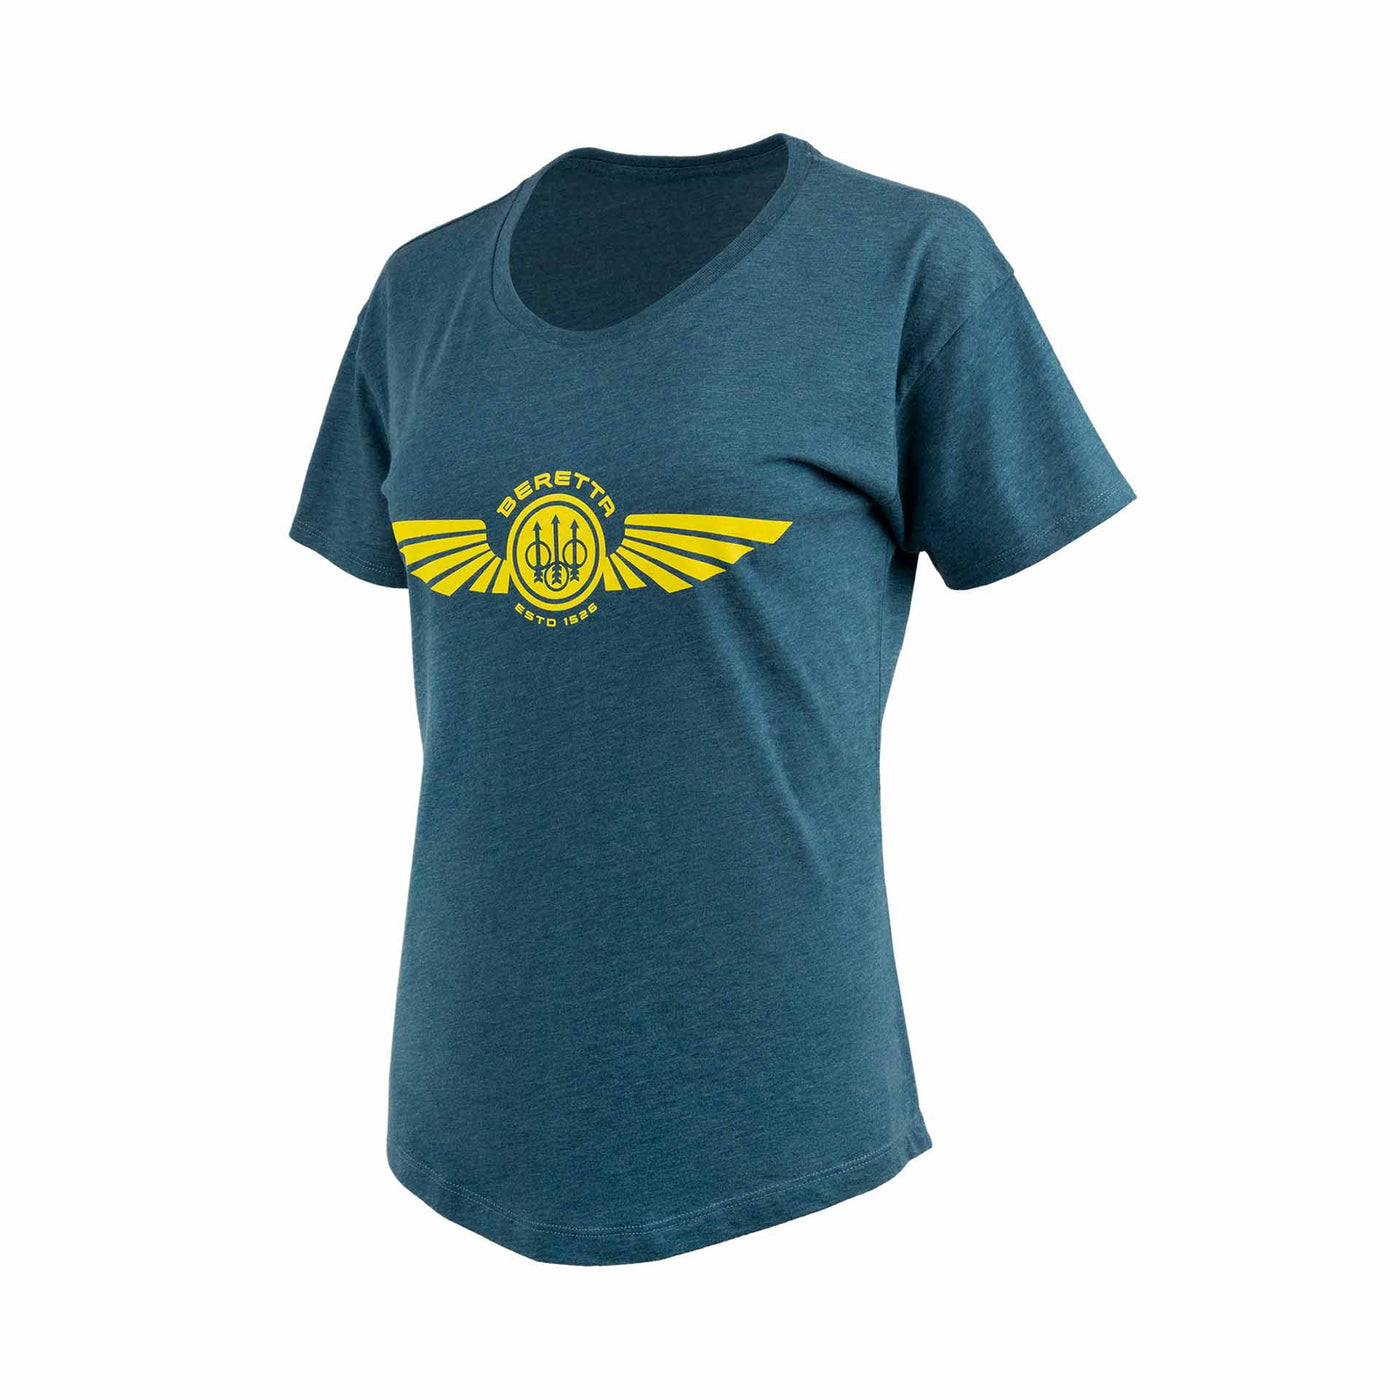 Women's Dea Wings T-shirt